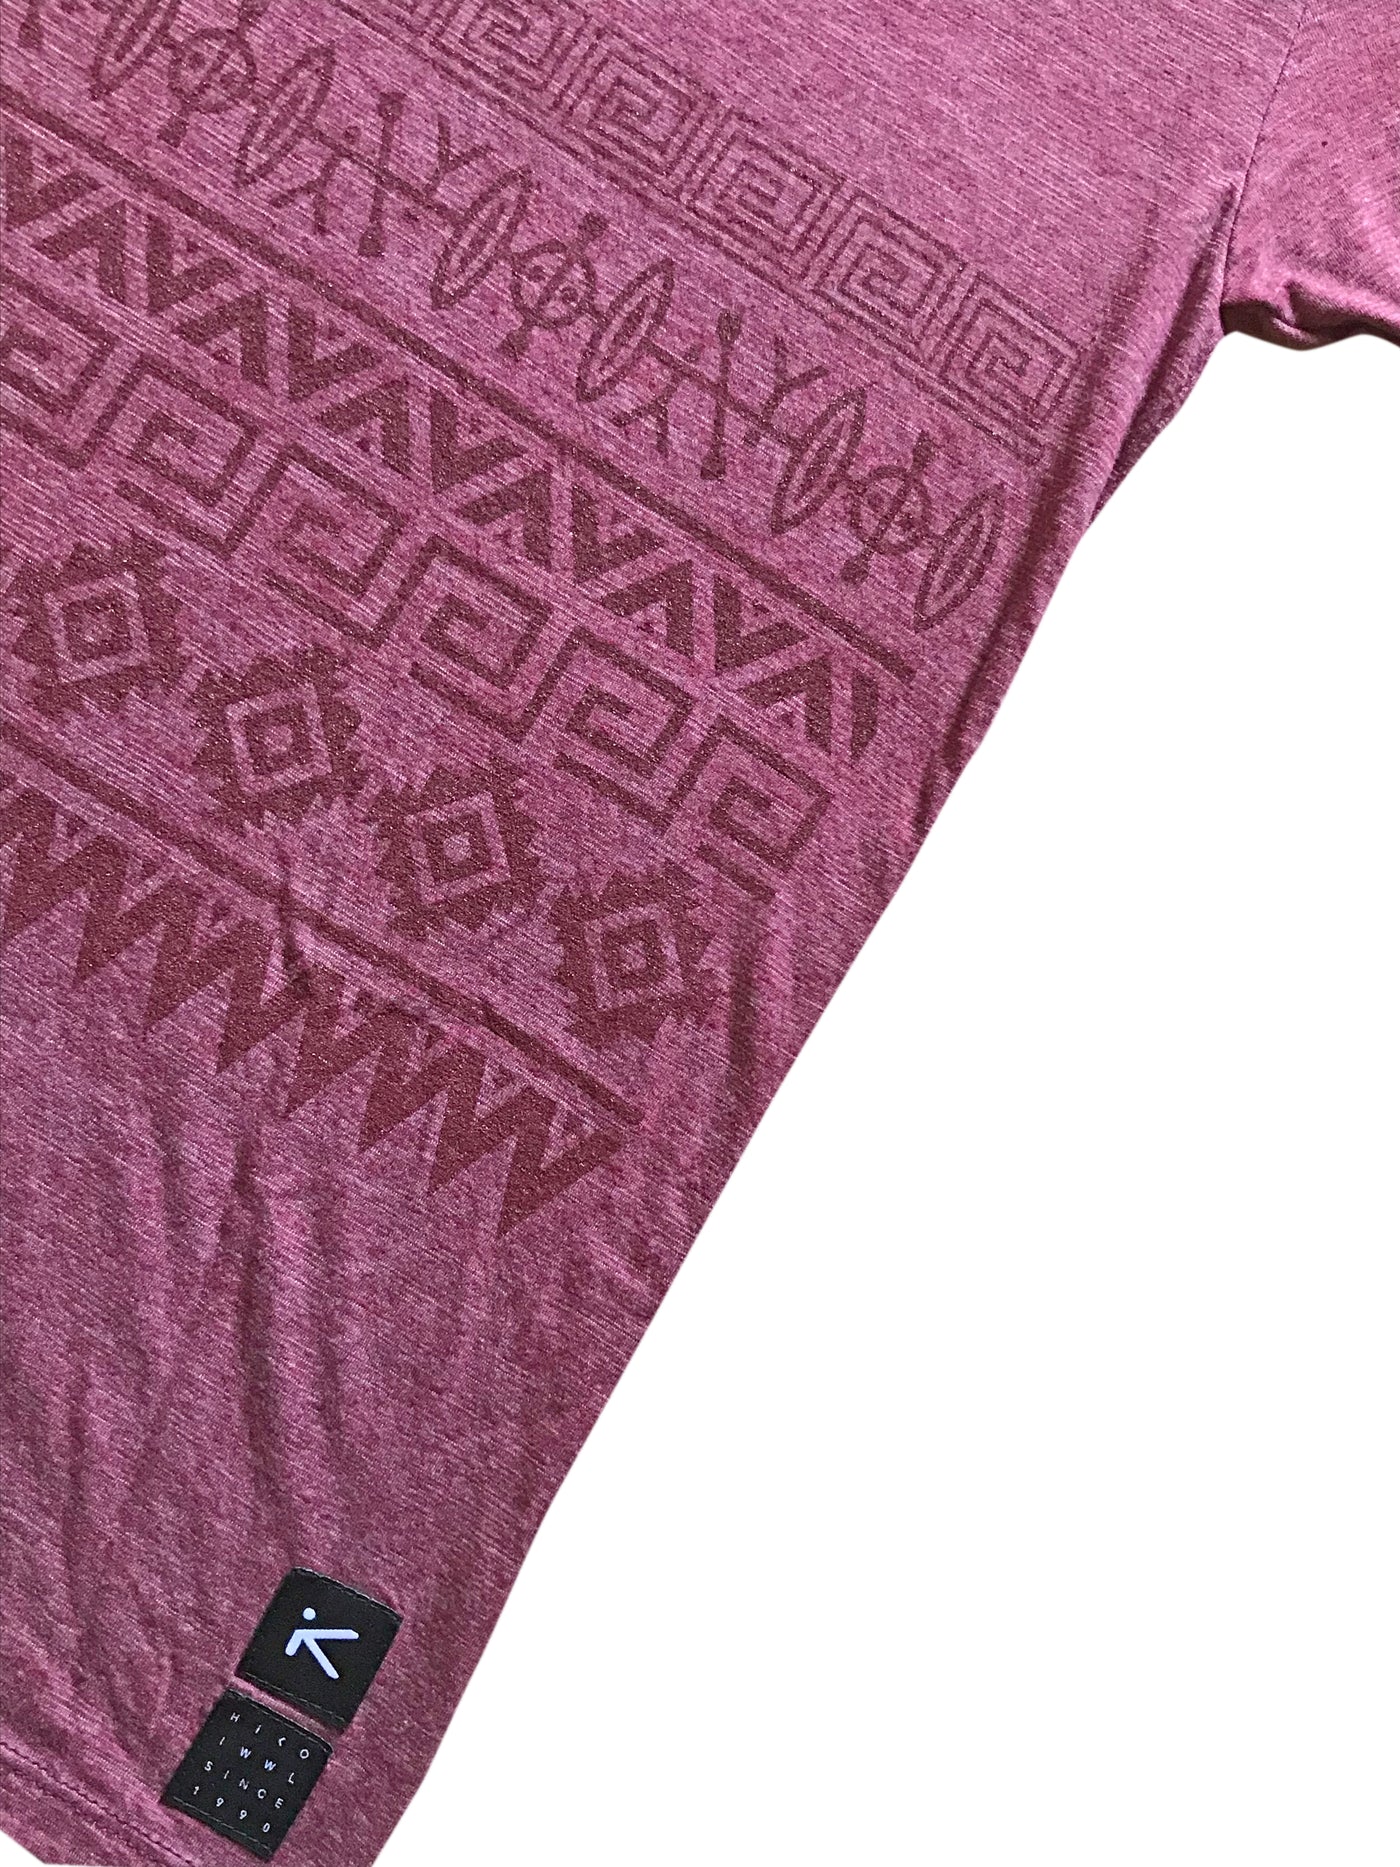 Aztec Kayaker T-Shirt